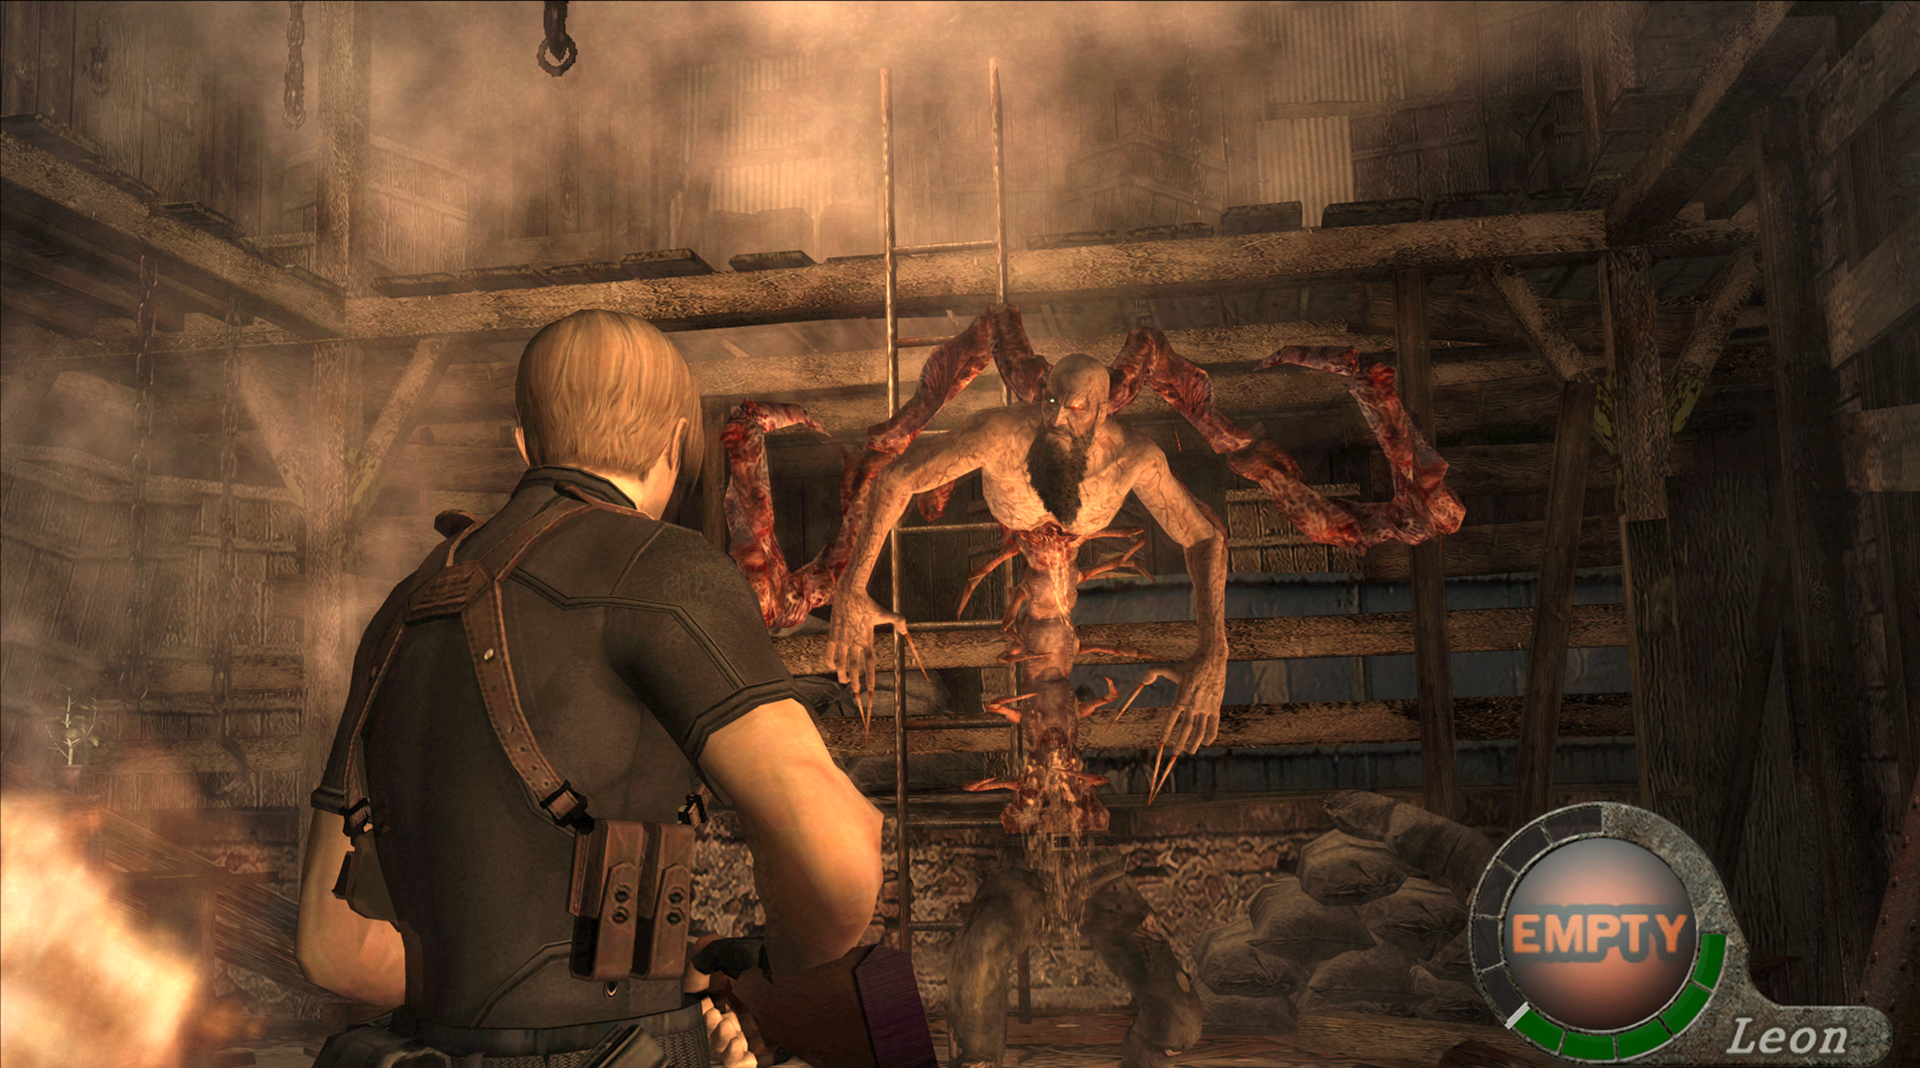 Resident Evil 4, PC Steam Game